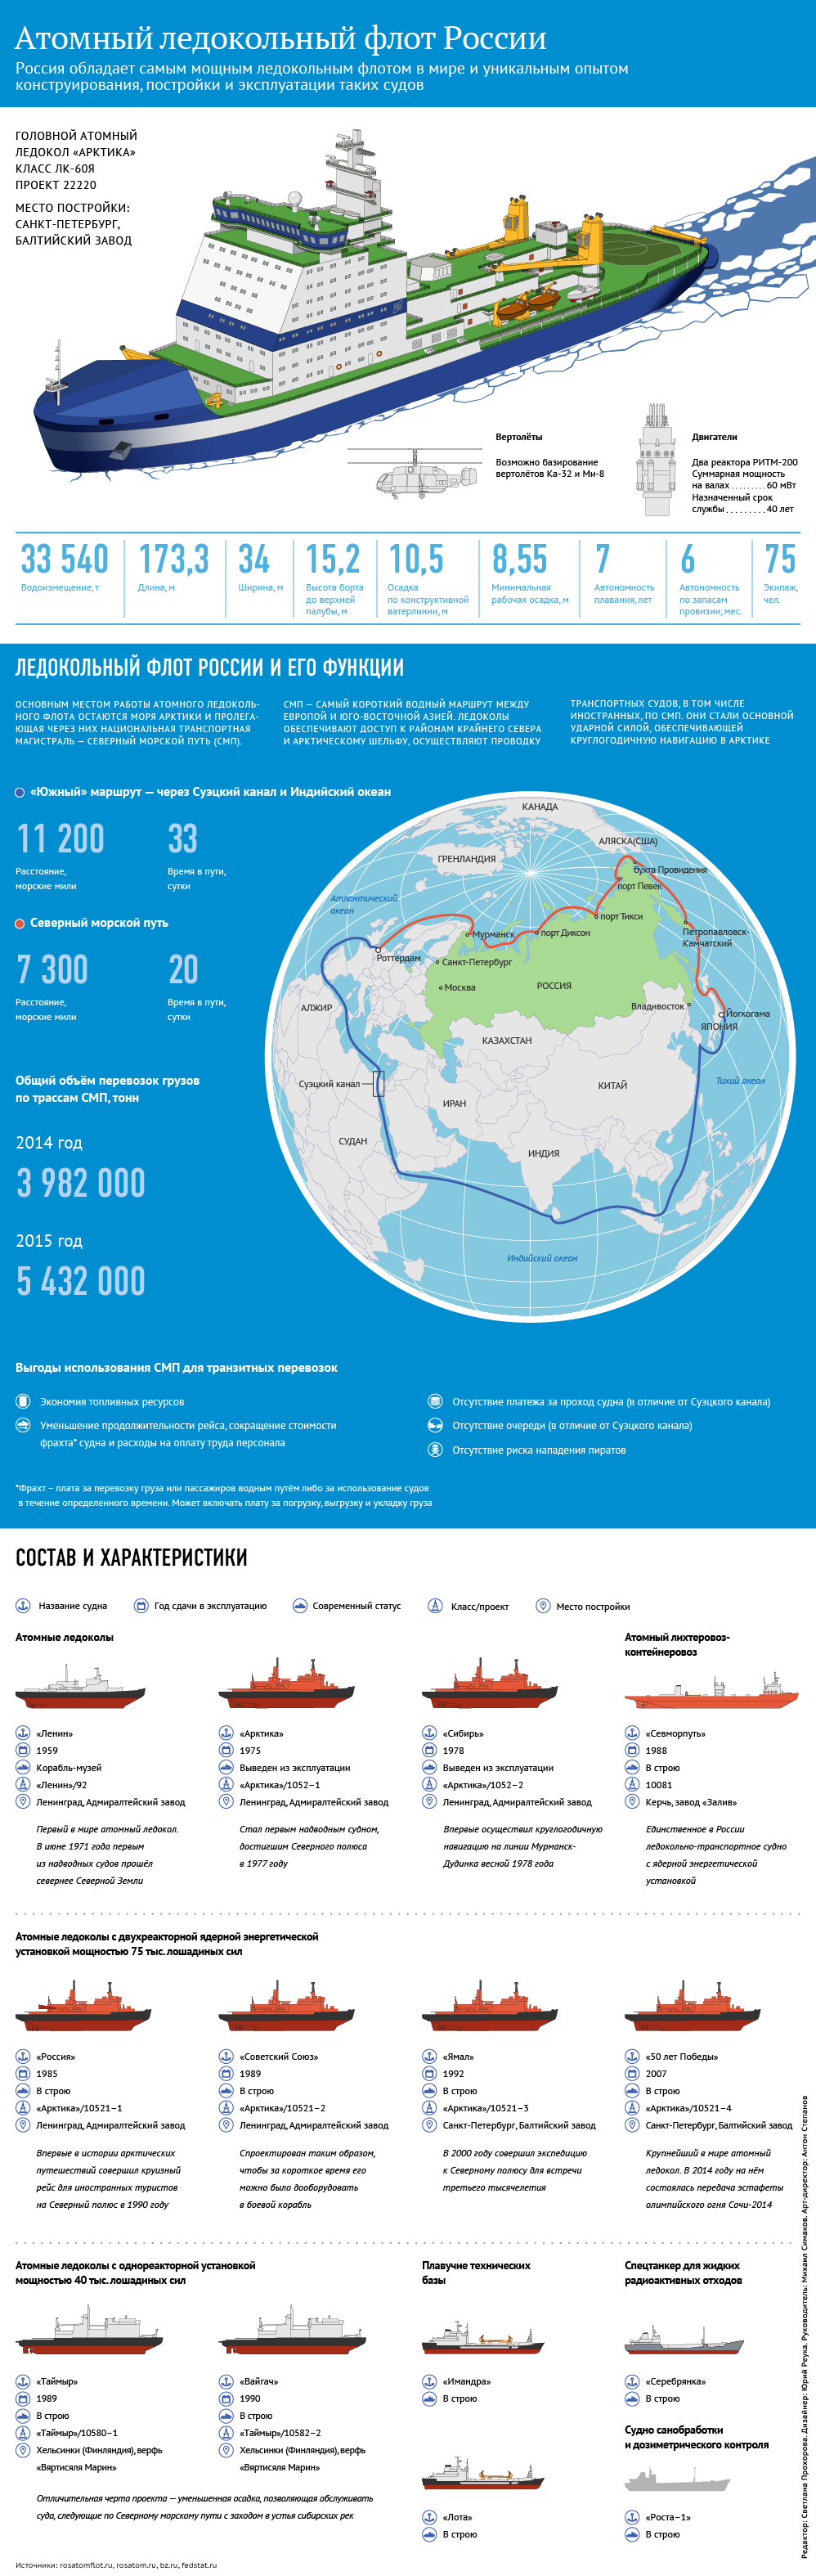 Атомный ледокольный флот России